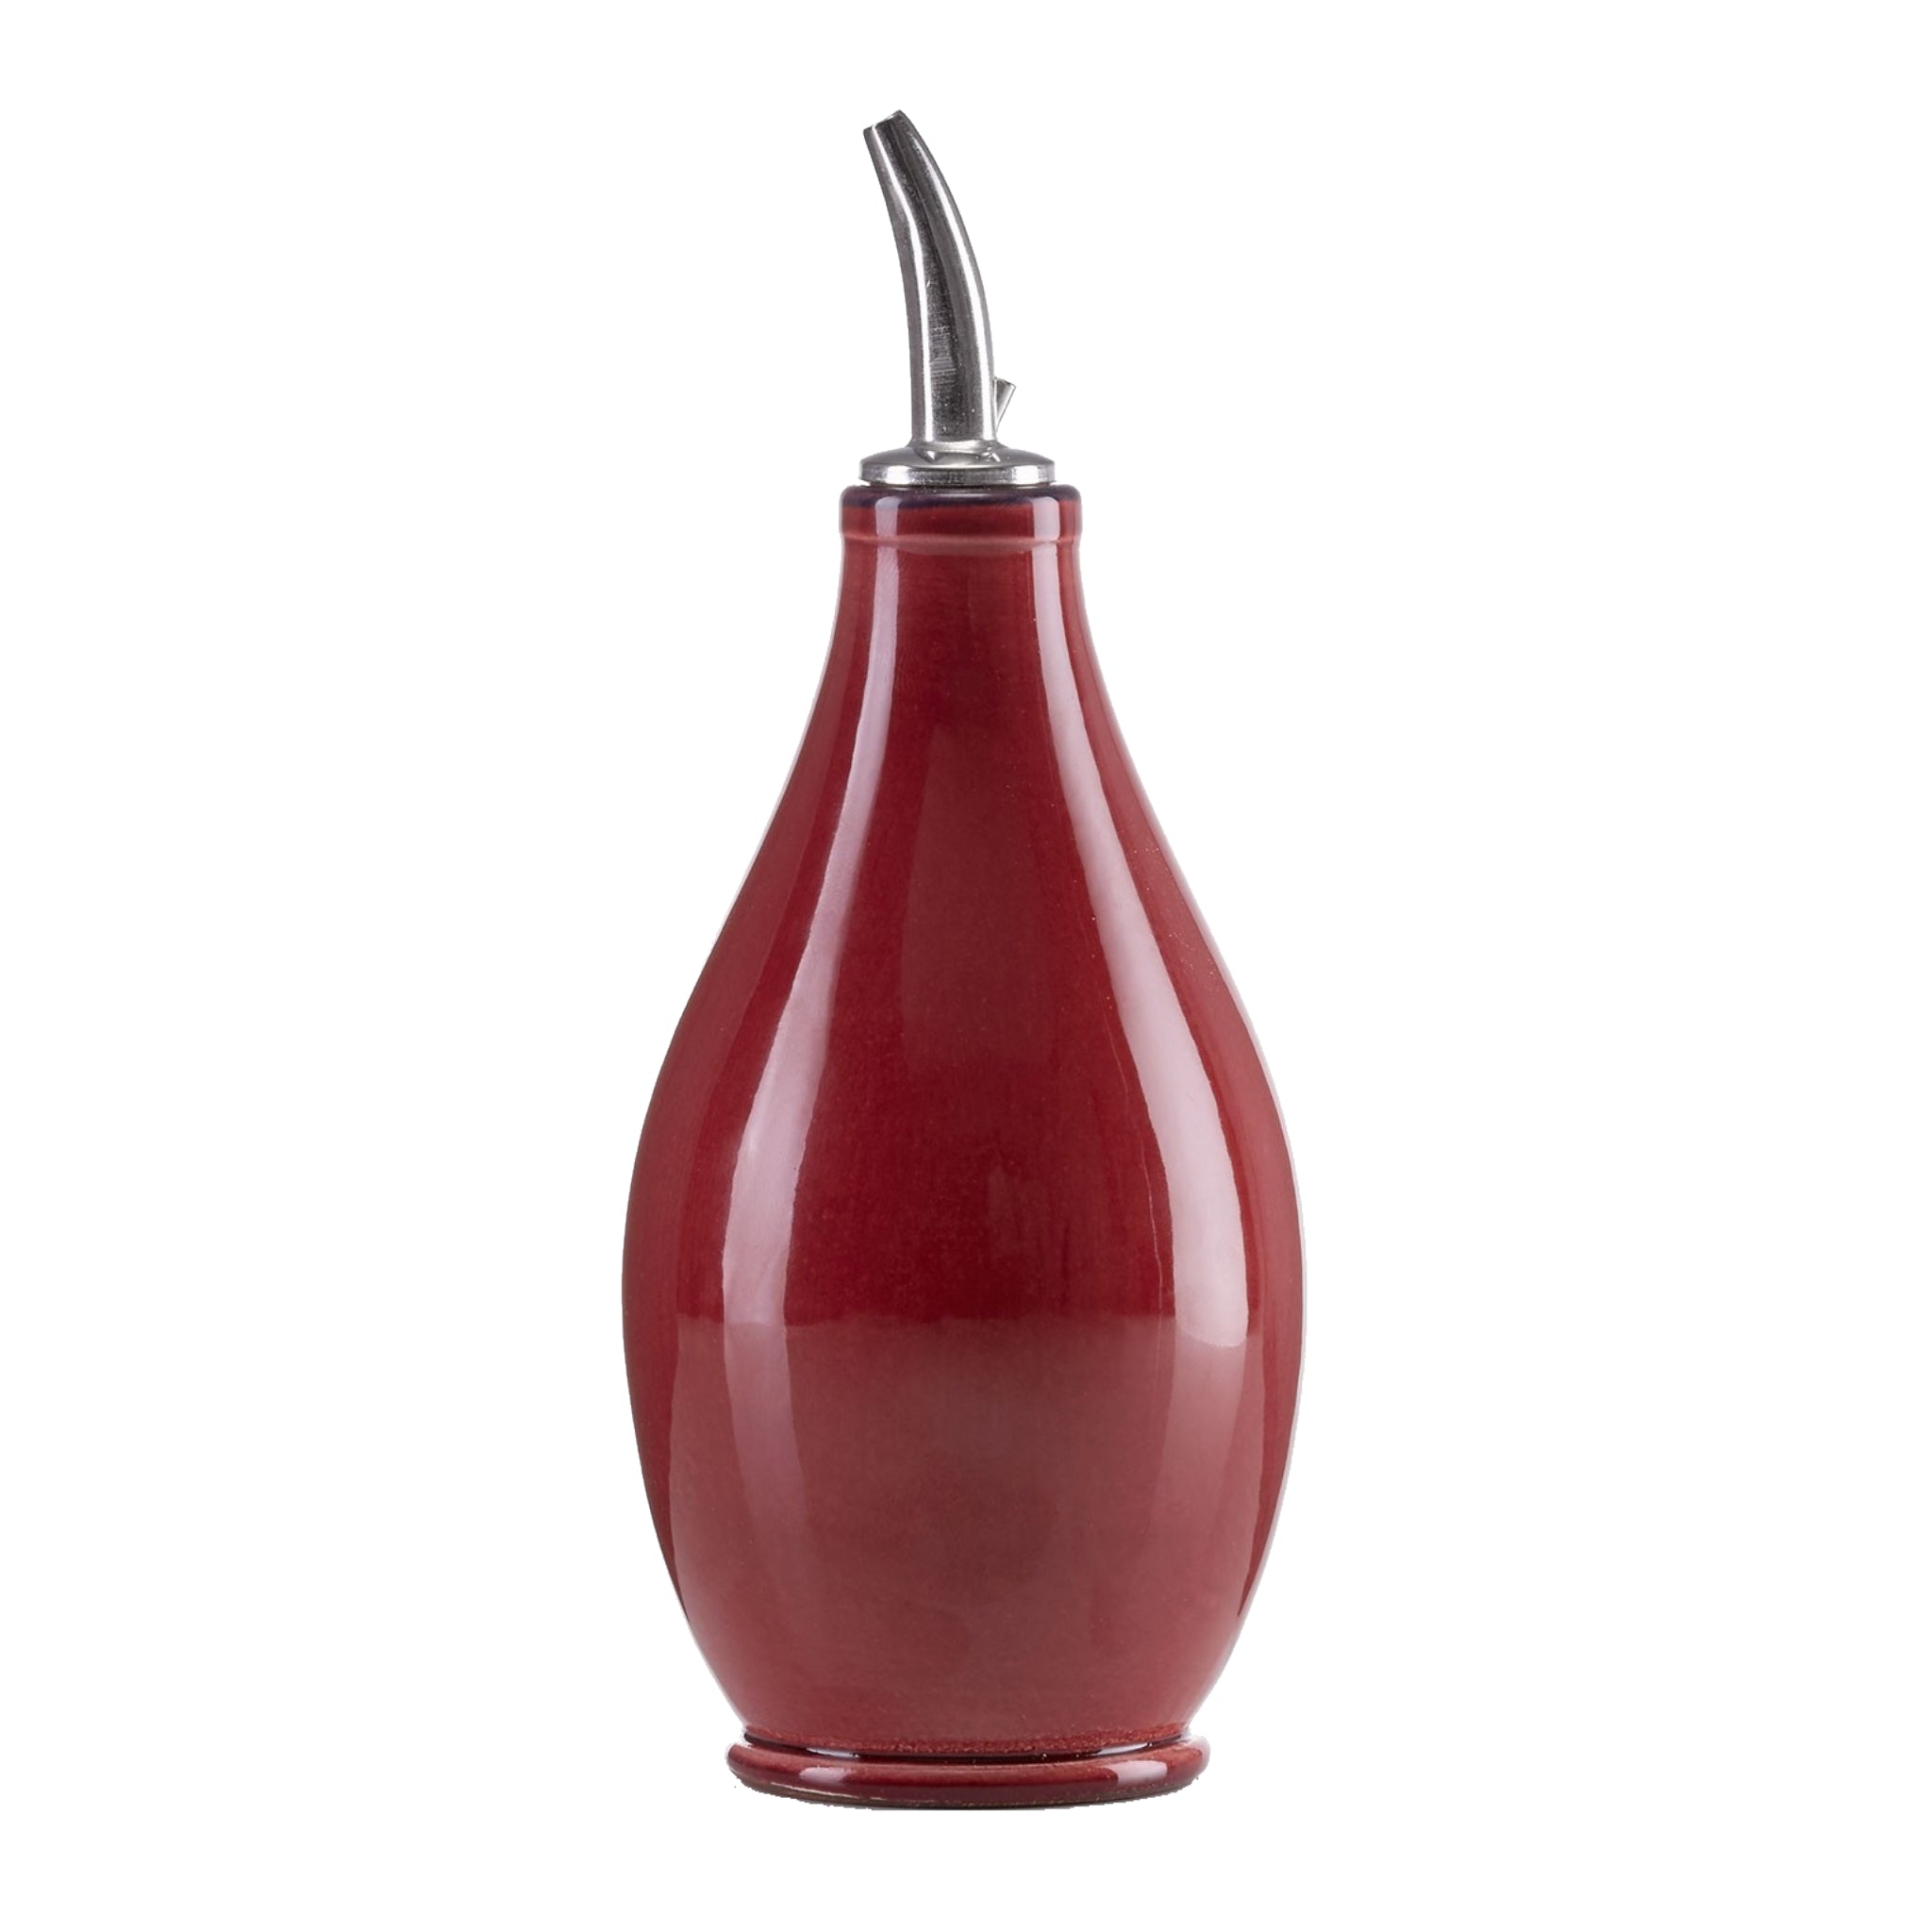 Rund keramik flaske til olivenolie fra Atelier Bernex, rød